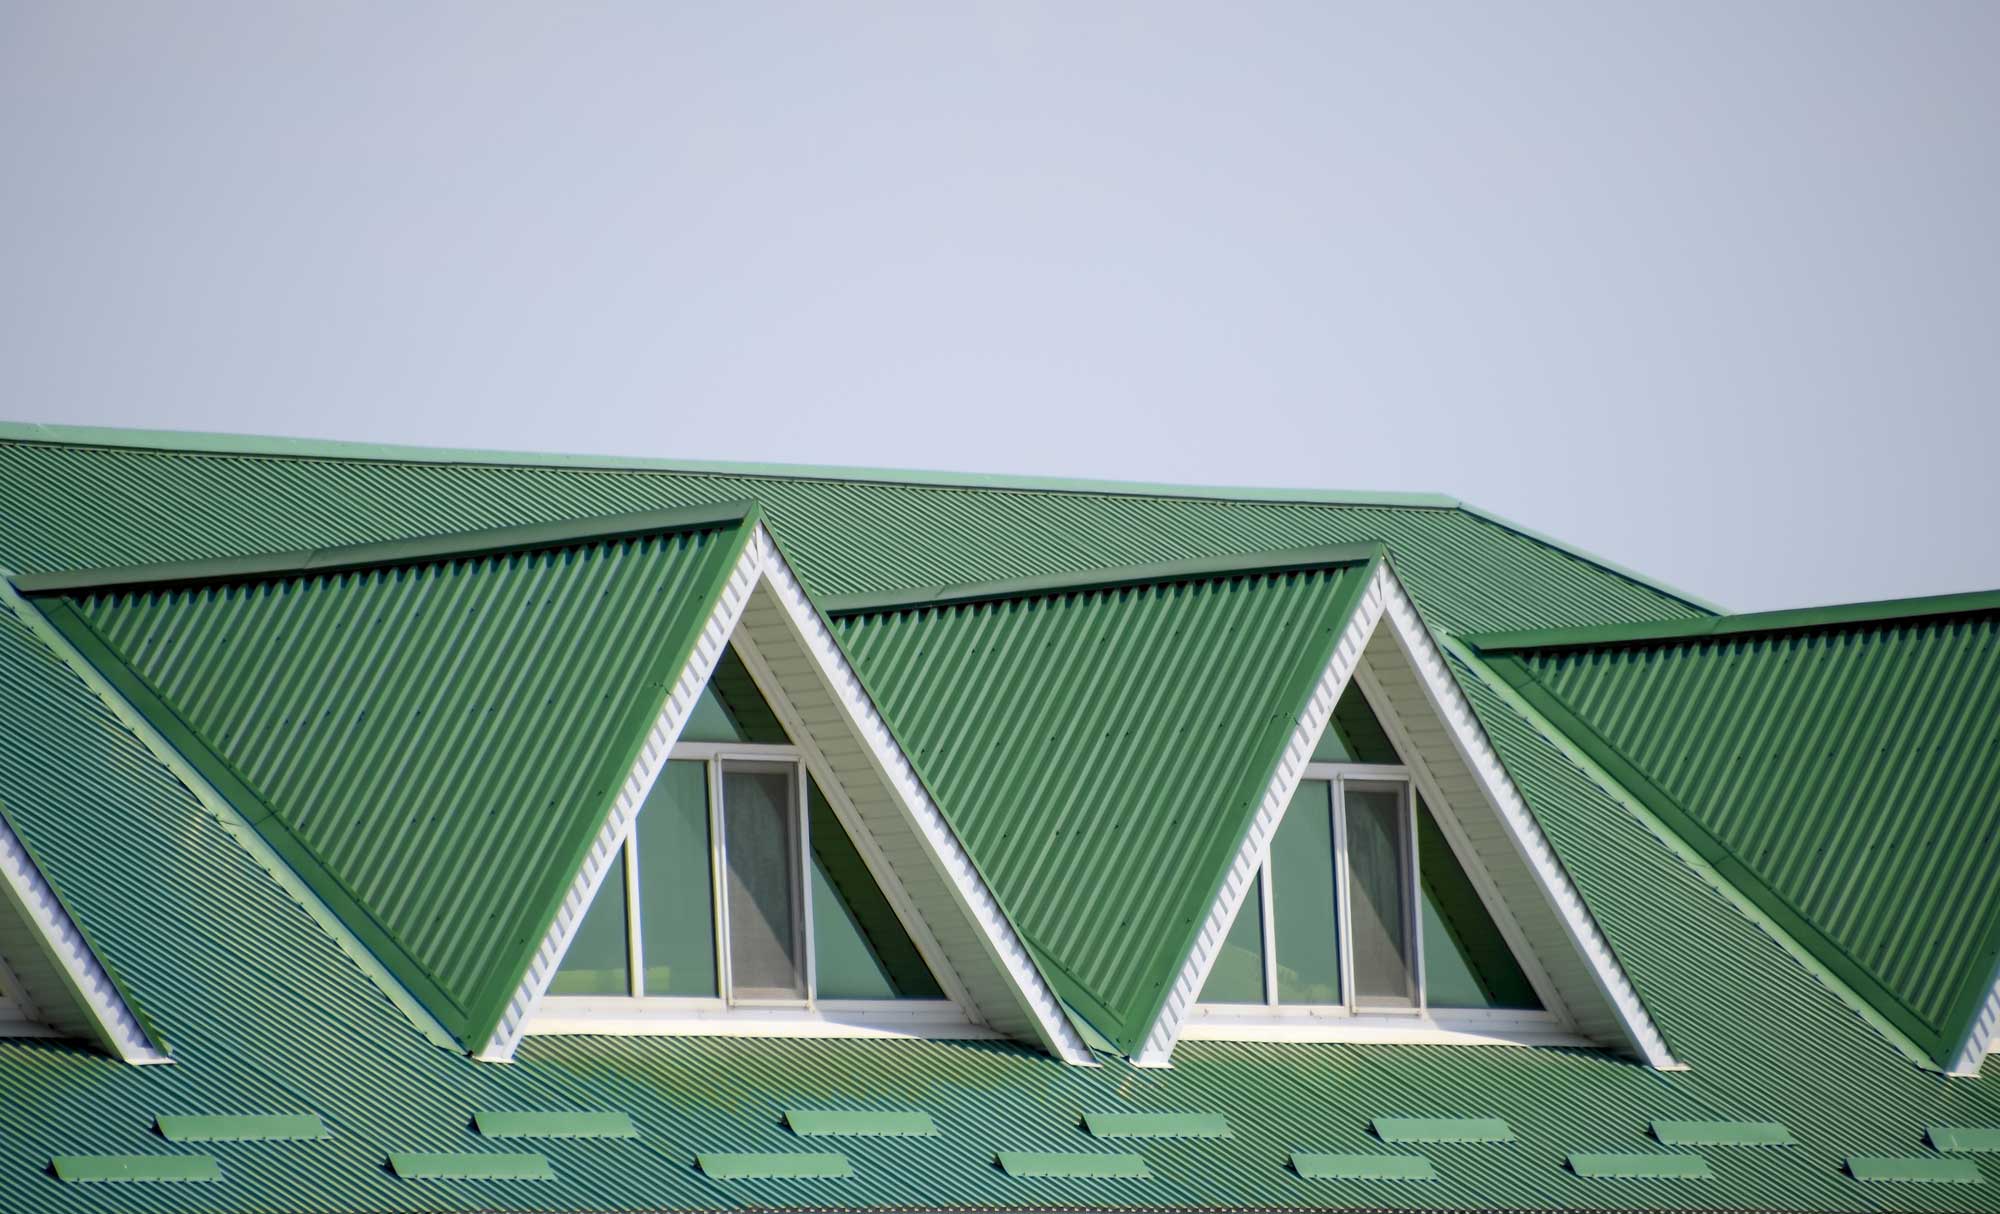 popuolar roof types, best roof types, best roof material